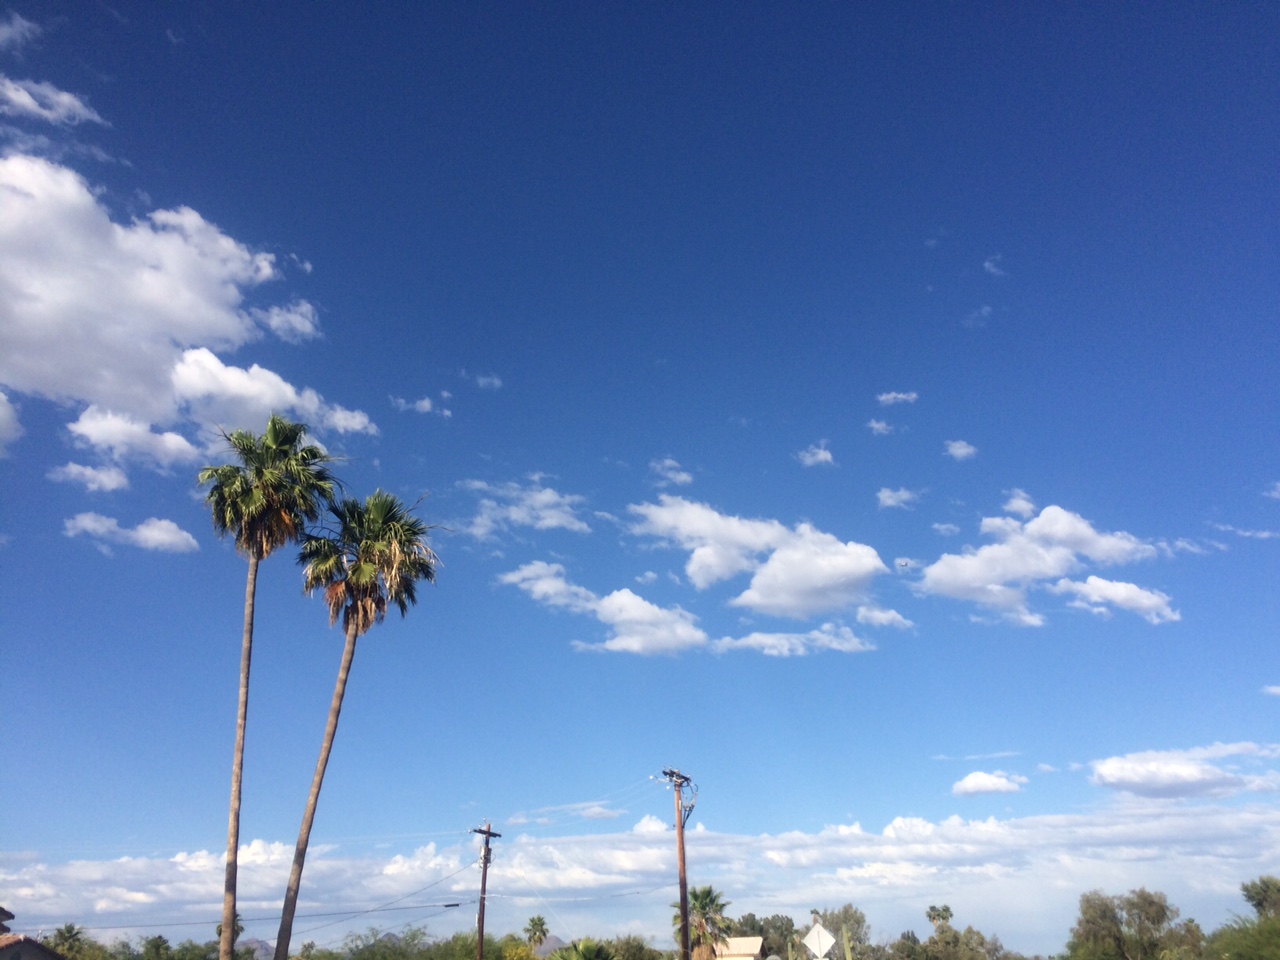 BA289 in deep blue Arizona skies, May 18th, 2015.